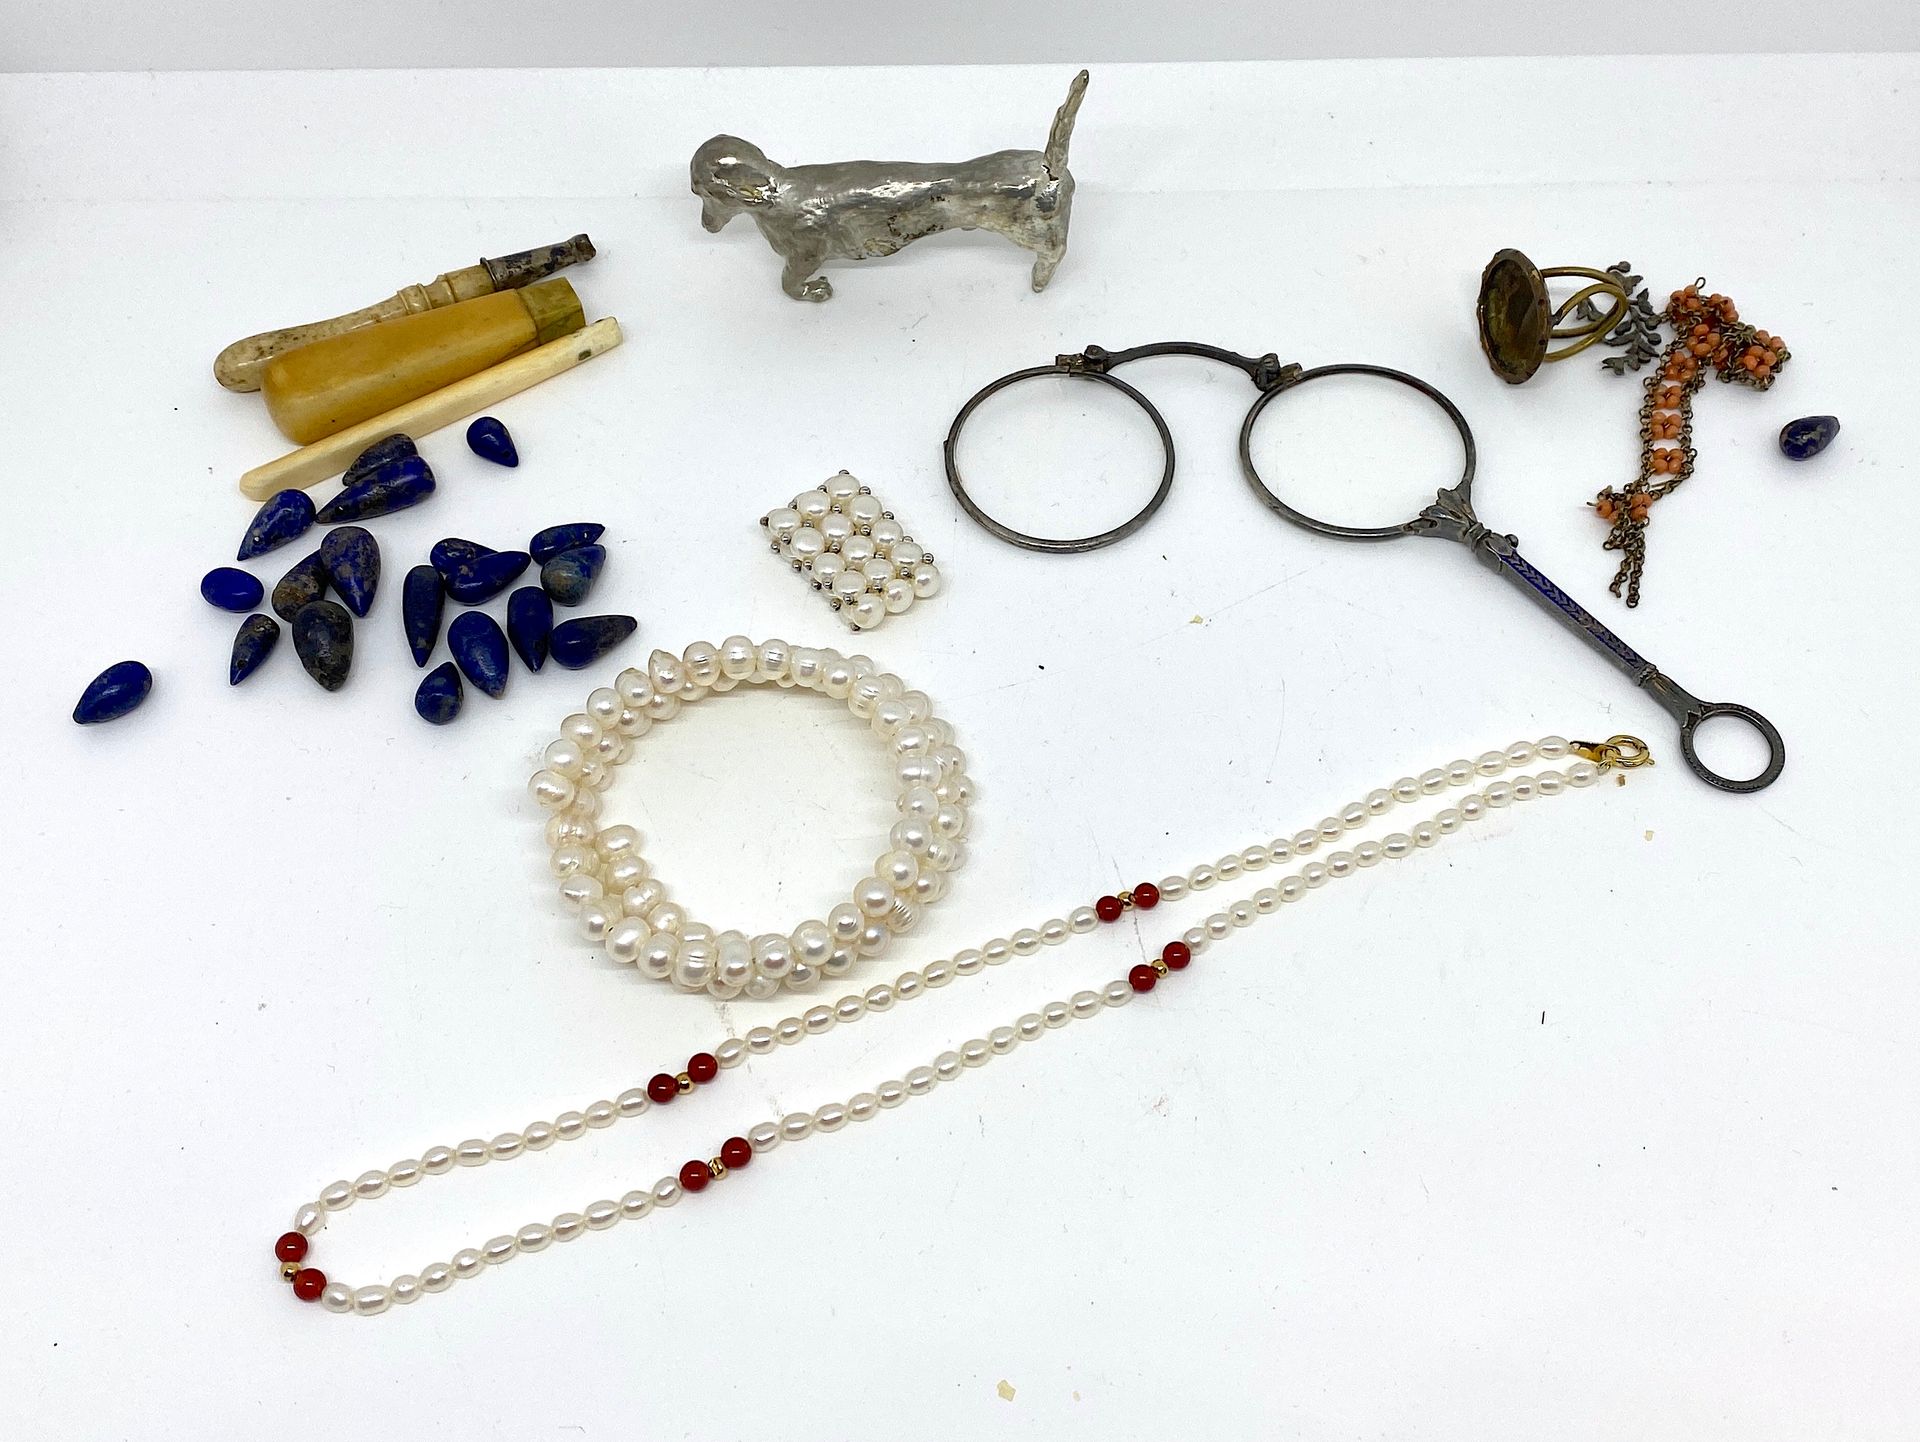 Null 杂项套装包括：:

- 青金石珠子

- 一套：养殖珍珠手镯、戒指和项链，一个长柄耳环。

- 象牙和骨质手柄

- 镀银腊肠犬小雕像

- 和各种